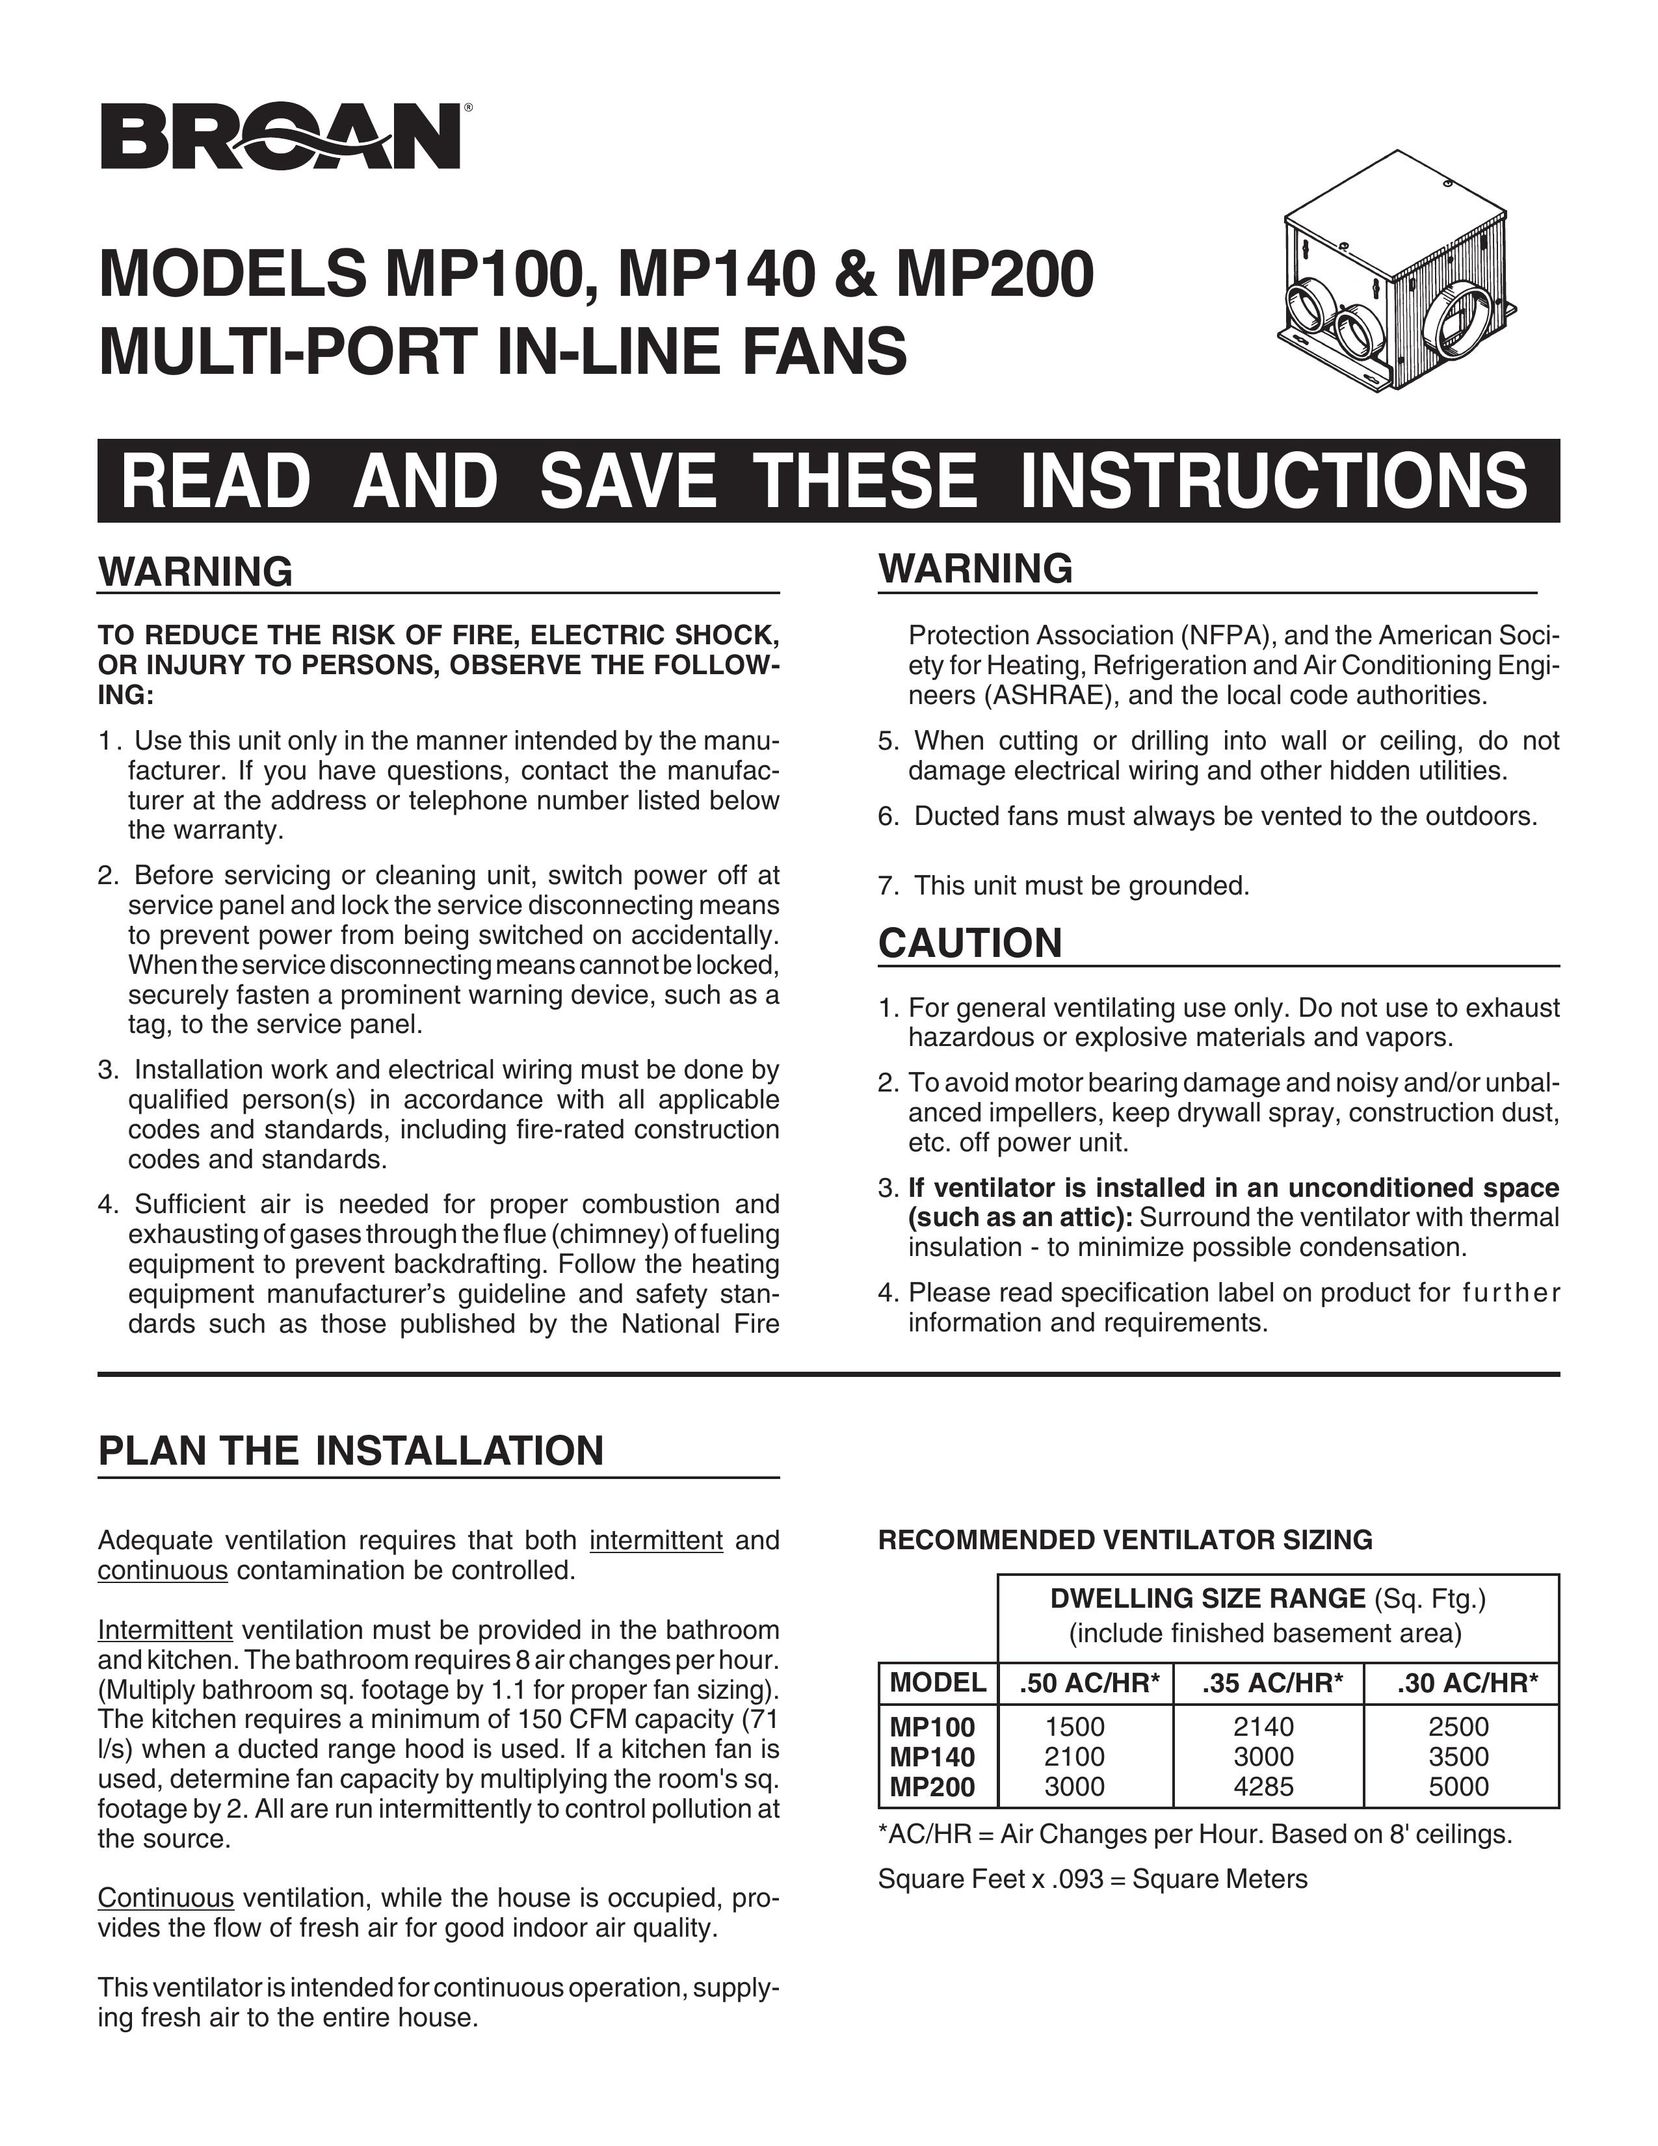 Broan MP100 Fan User Manual